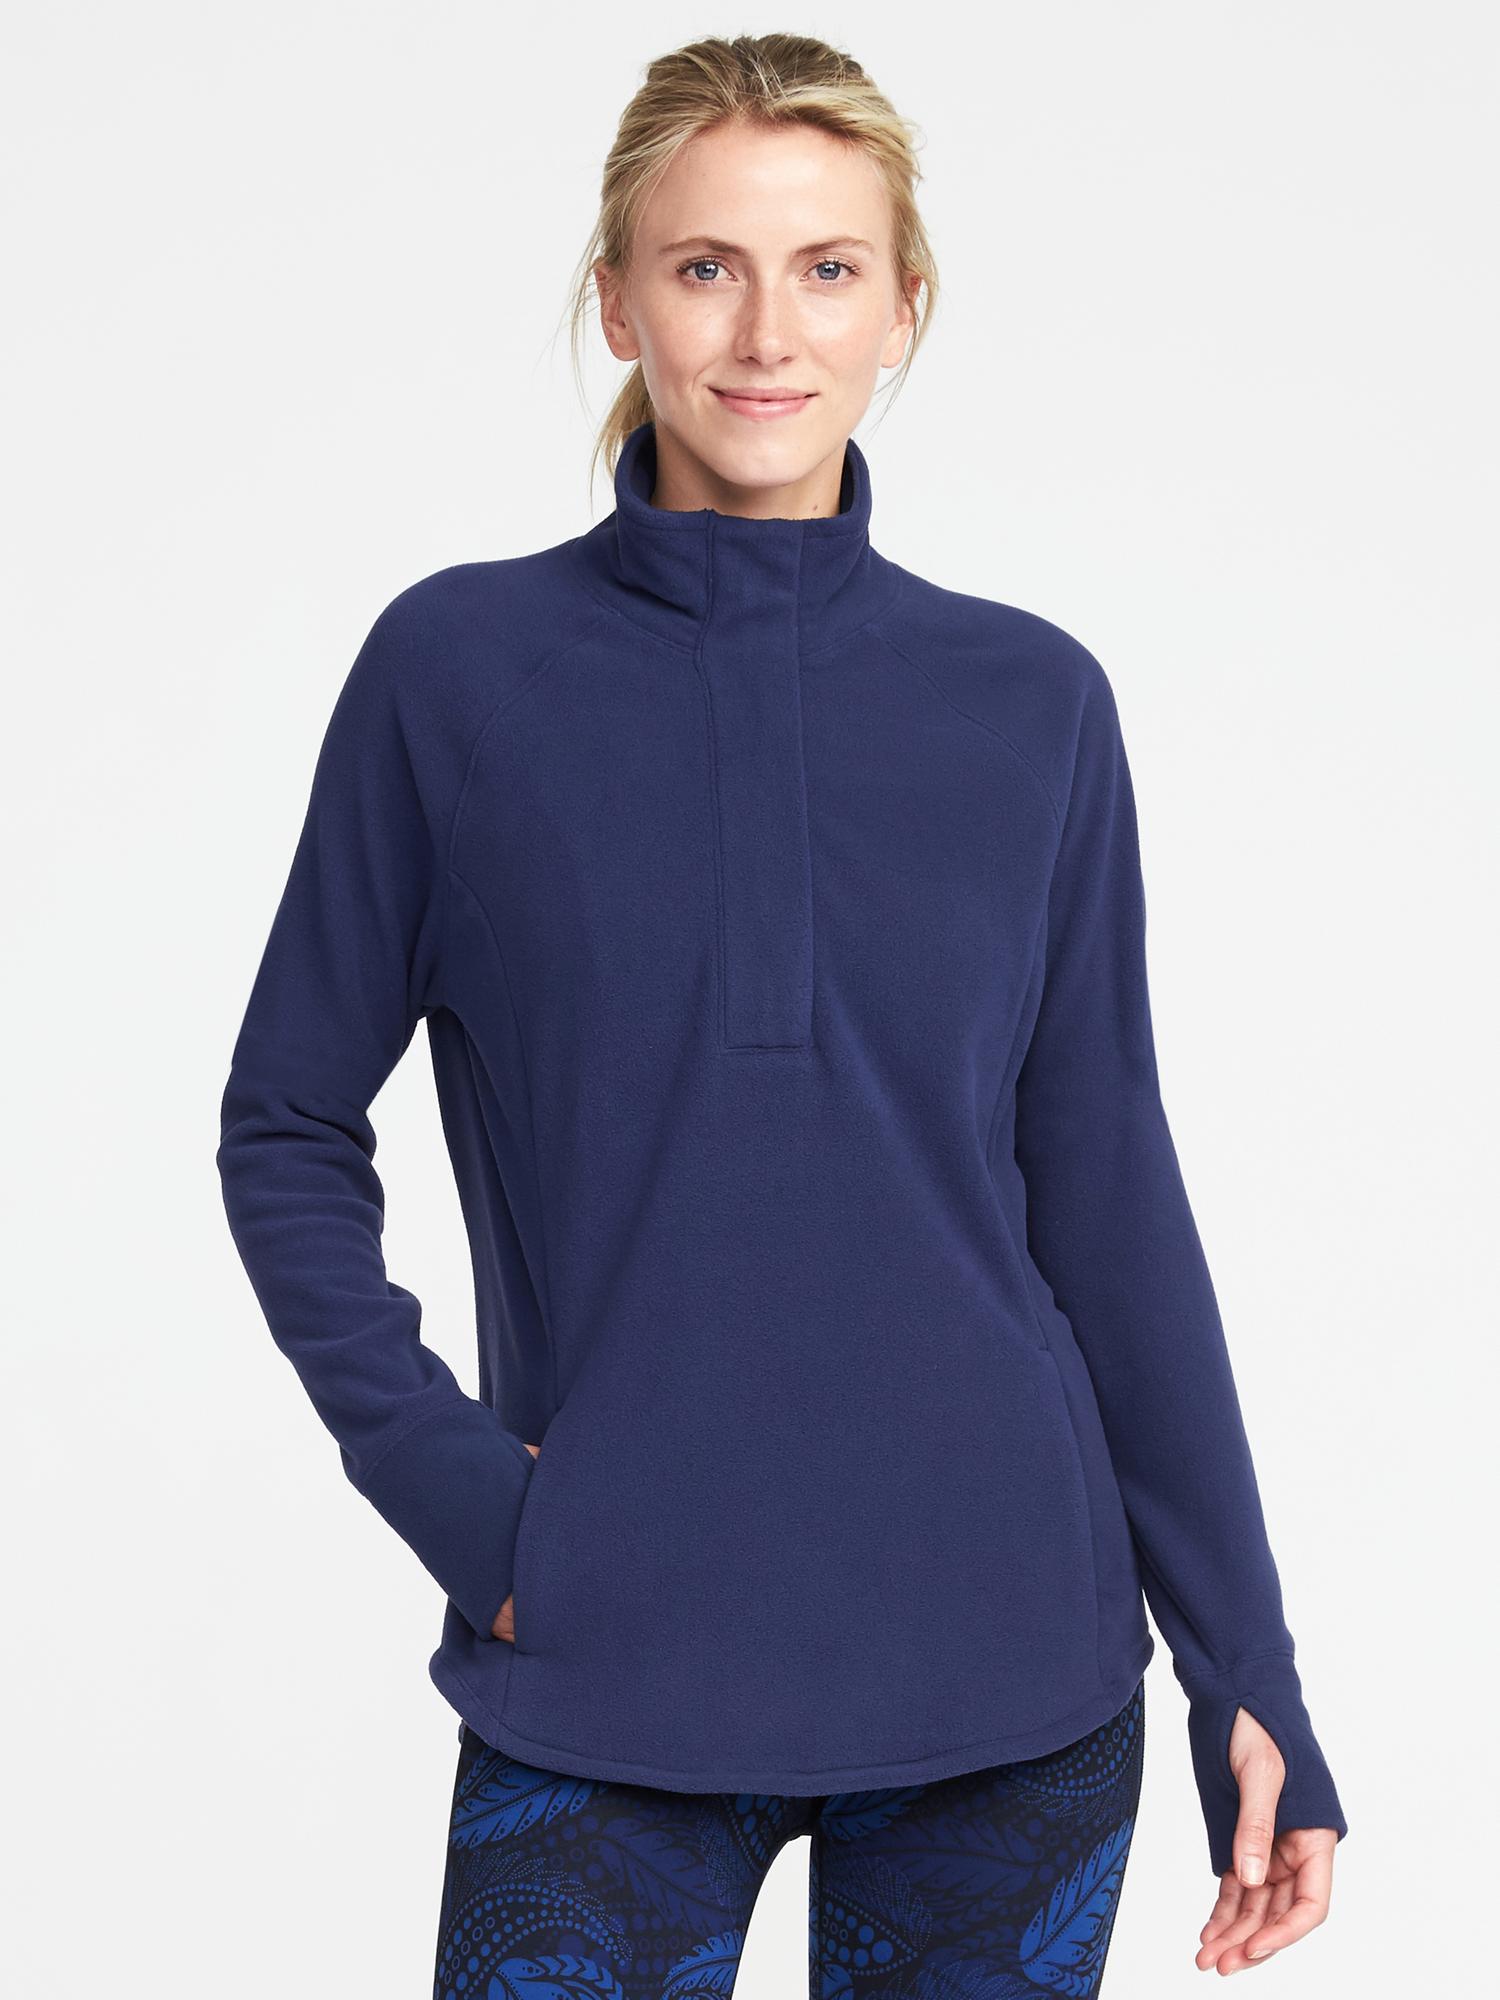 Go-Warm Performance Fleece 1/4-Zip Pullover for Women | Old Navy